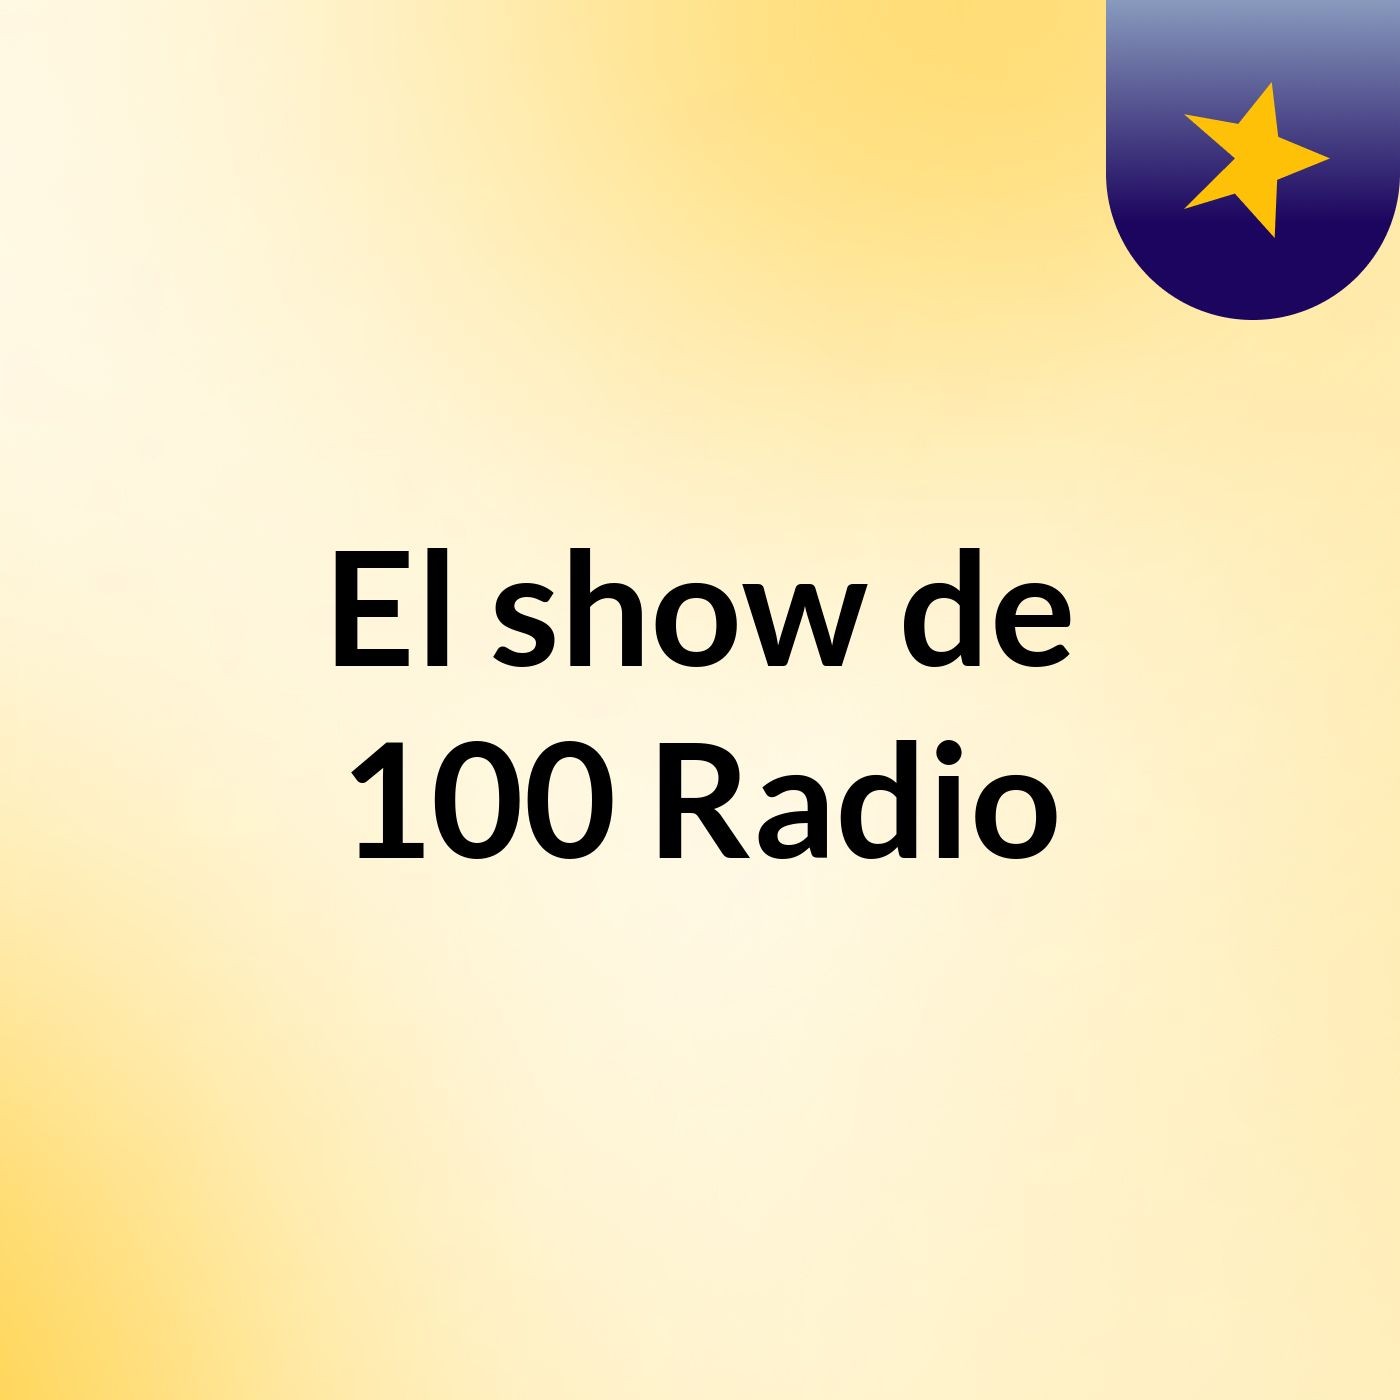 El show de 100 Radio